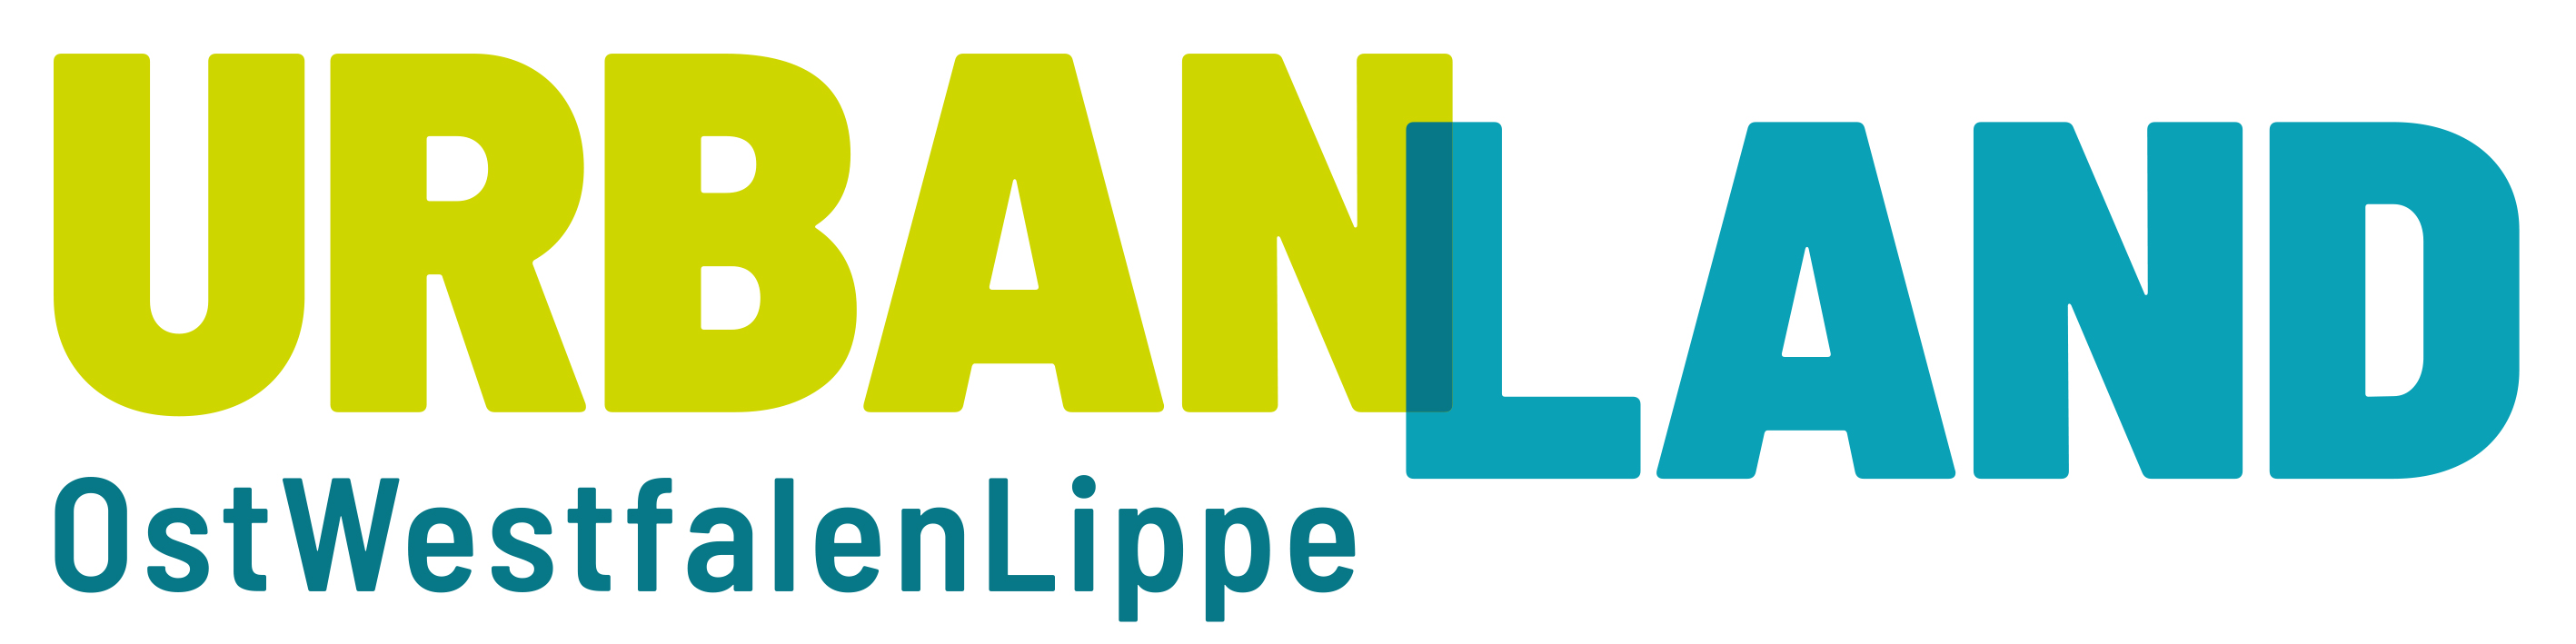 UrbanLand Logo sRGB